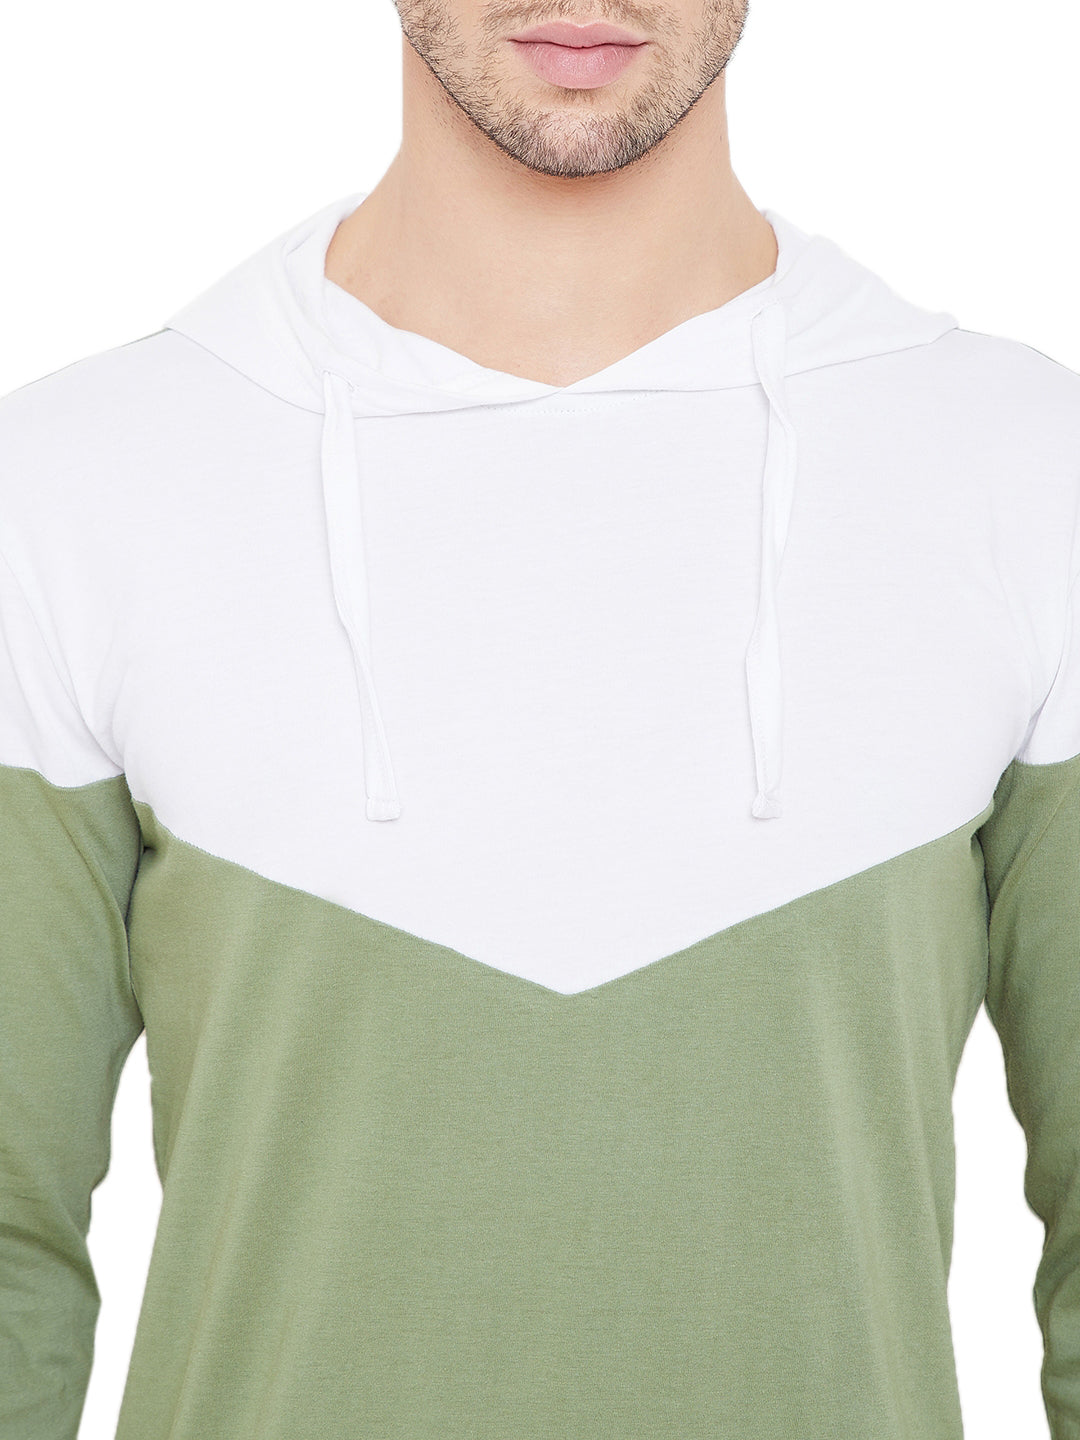 White/Moss Green Men Full Sleeves Hooded T-Shirt